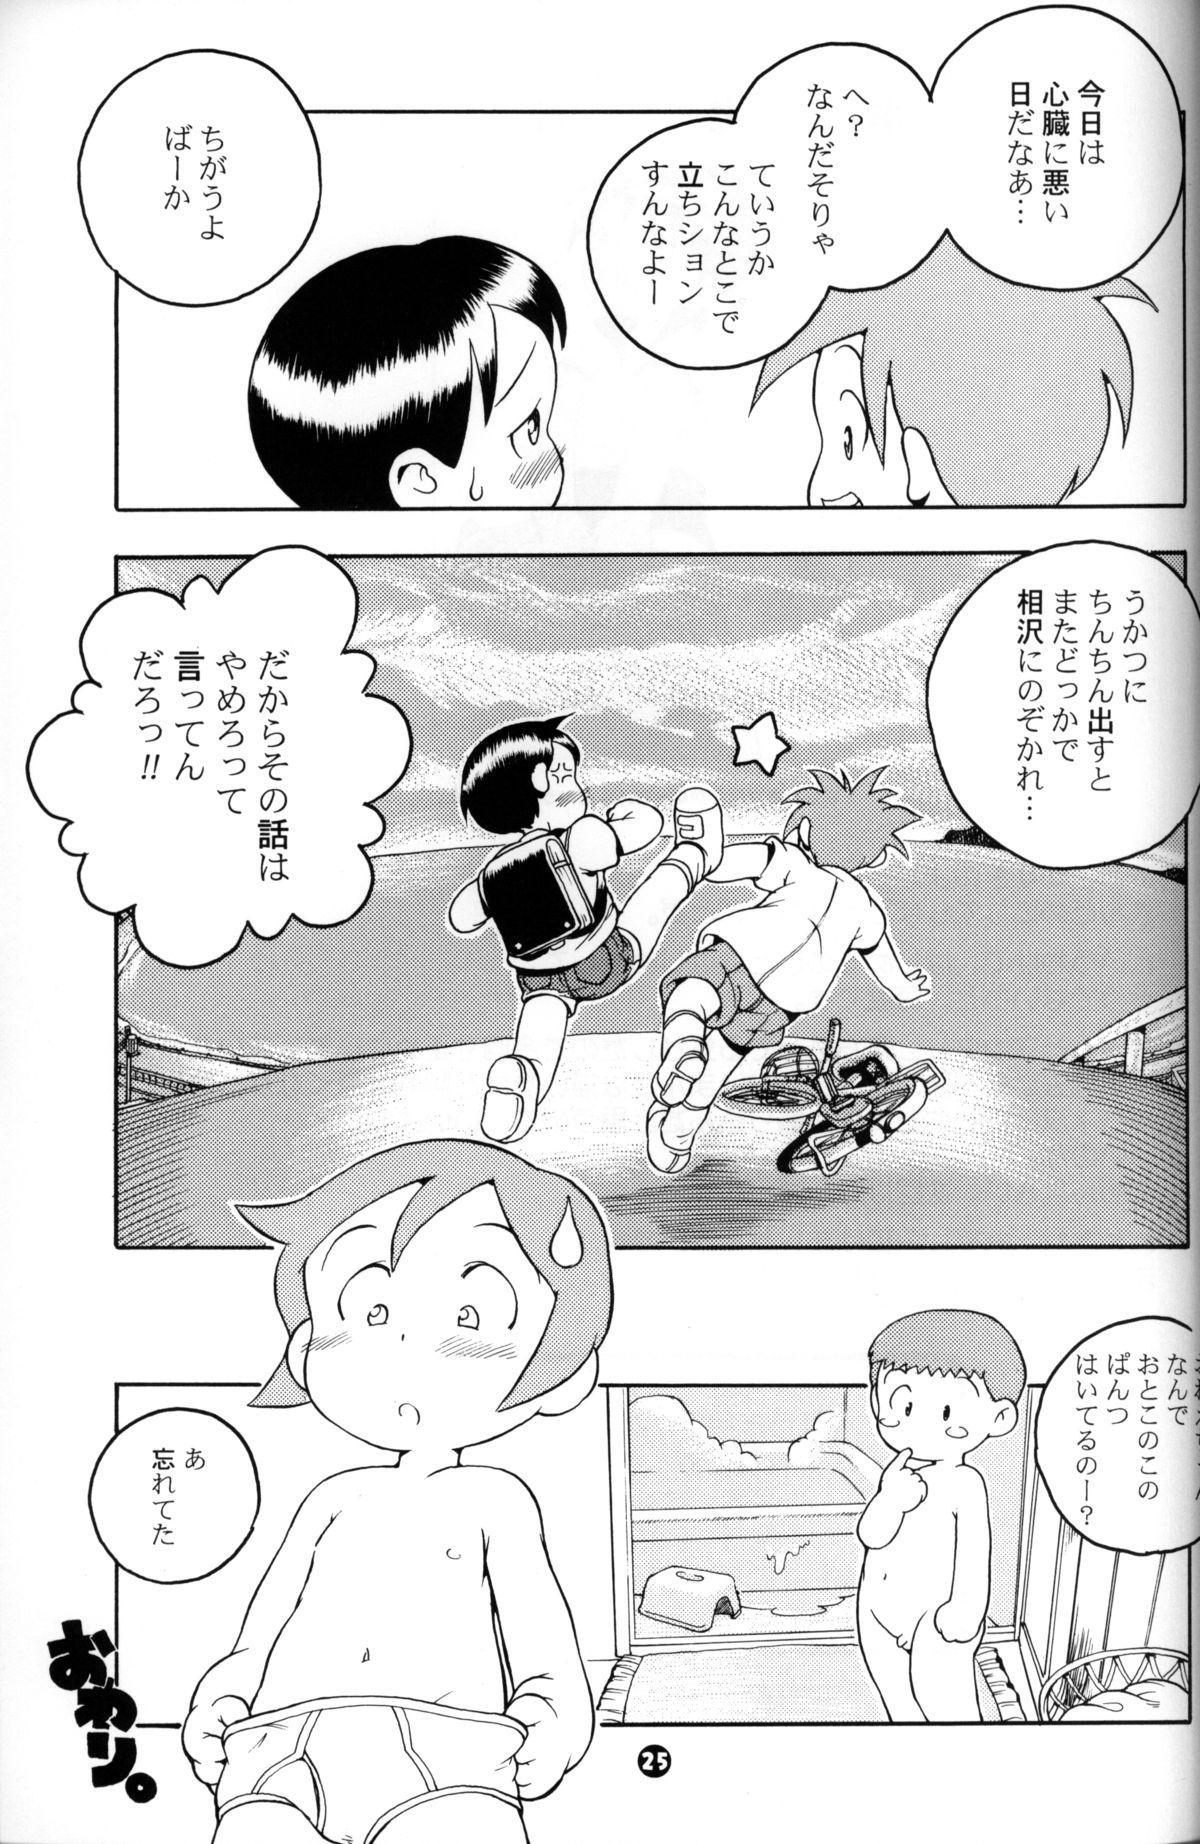 Glory Hole Susukino Nao - MP#5 Breast - Page 24